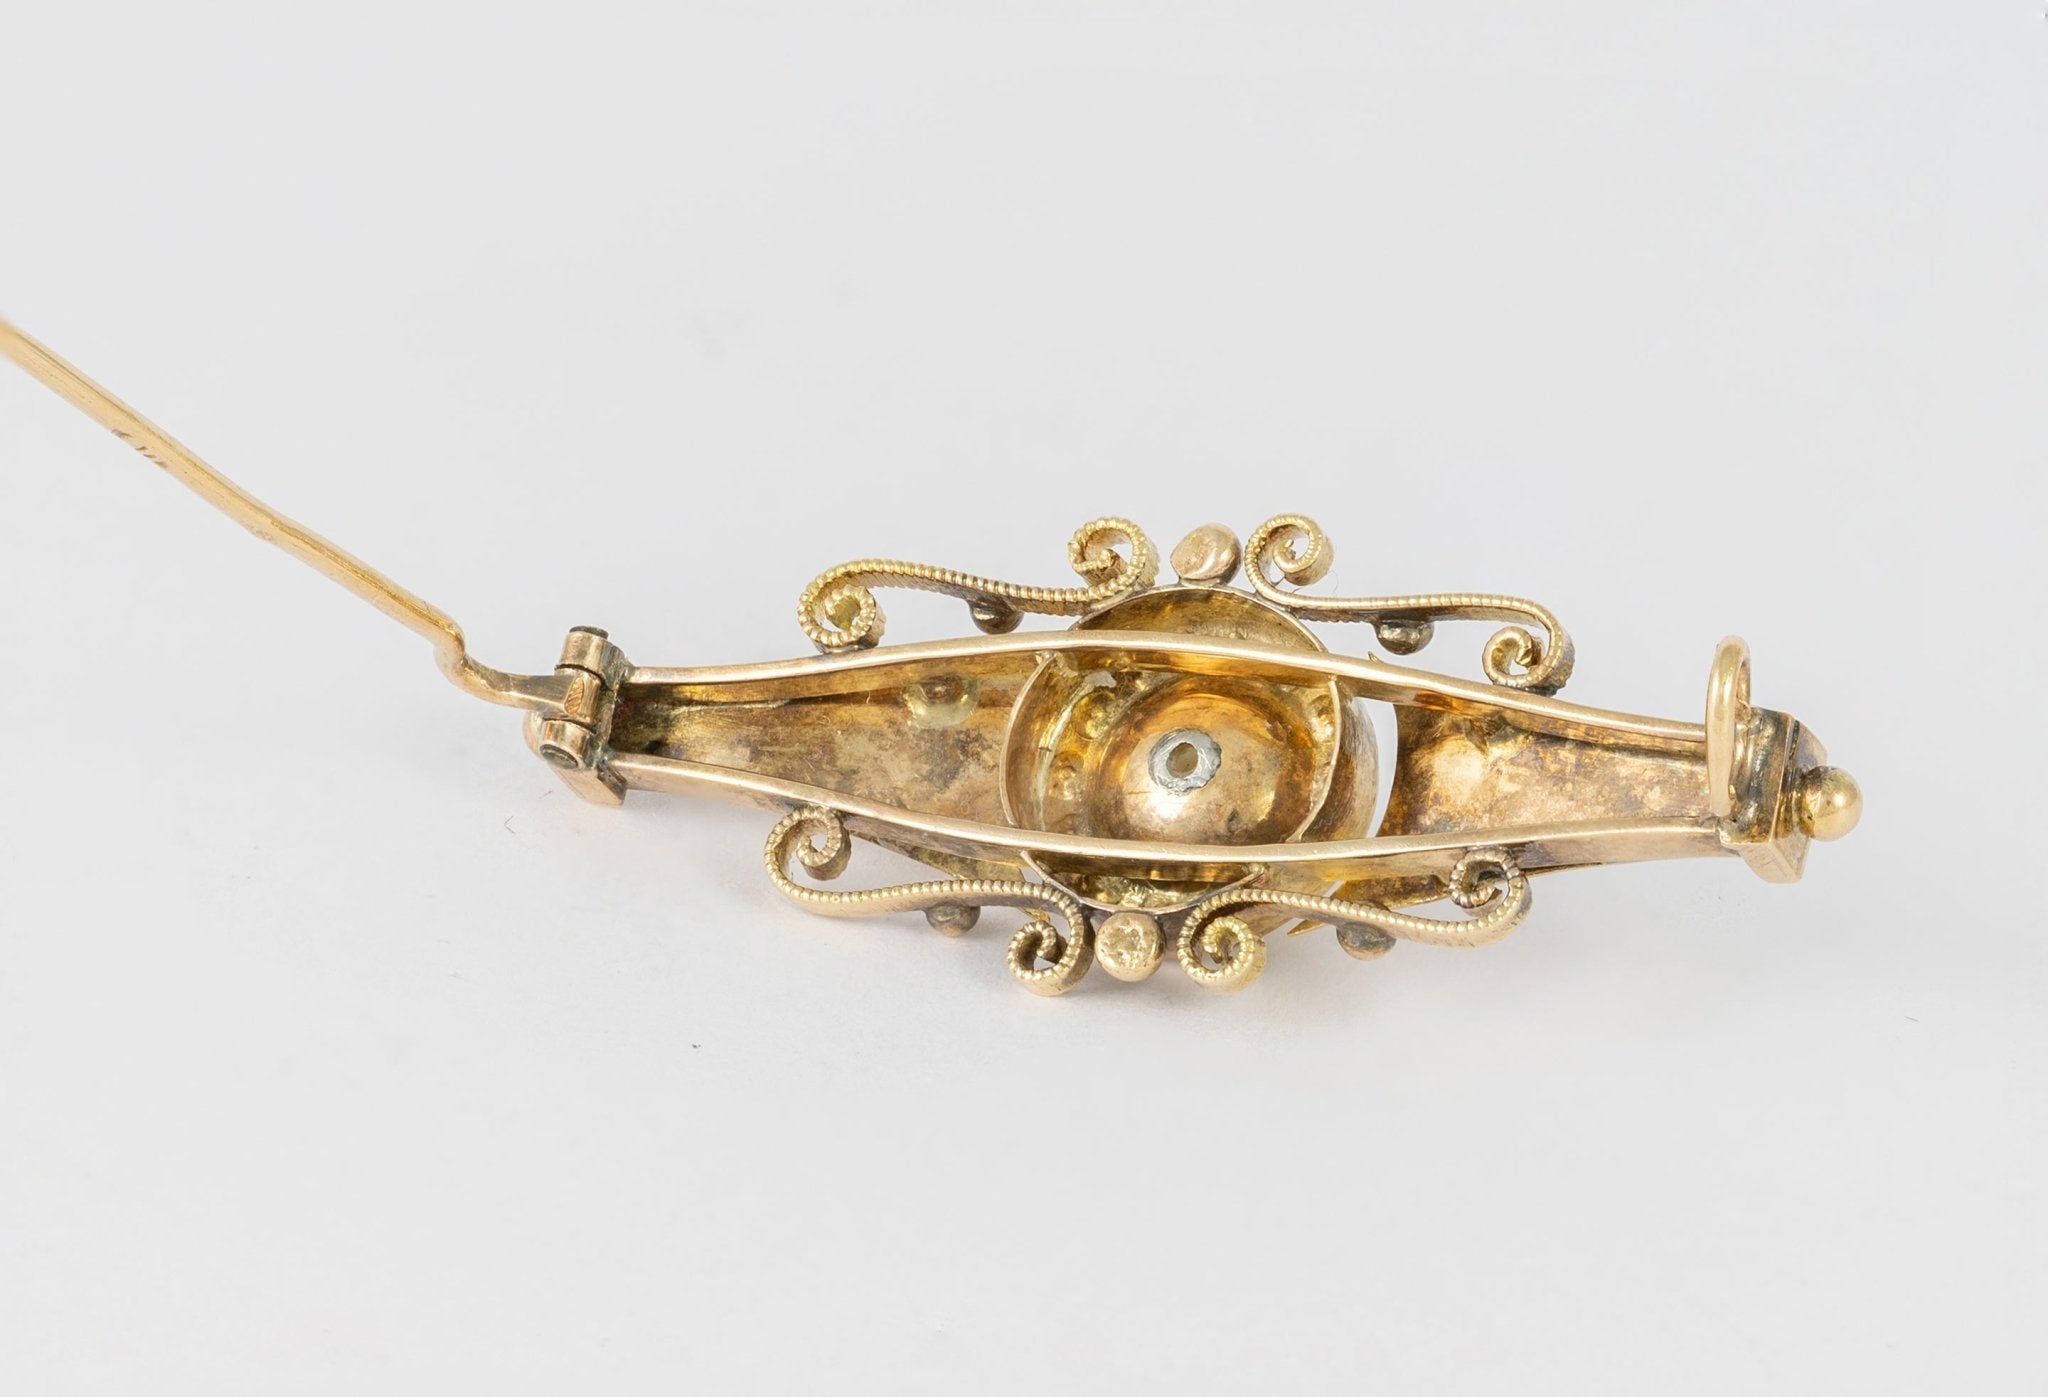 Broche antiguo en oro amarillo 18k y perlas - Mayka Jewels